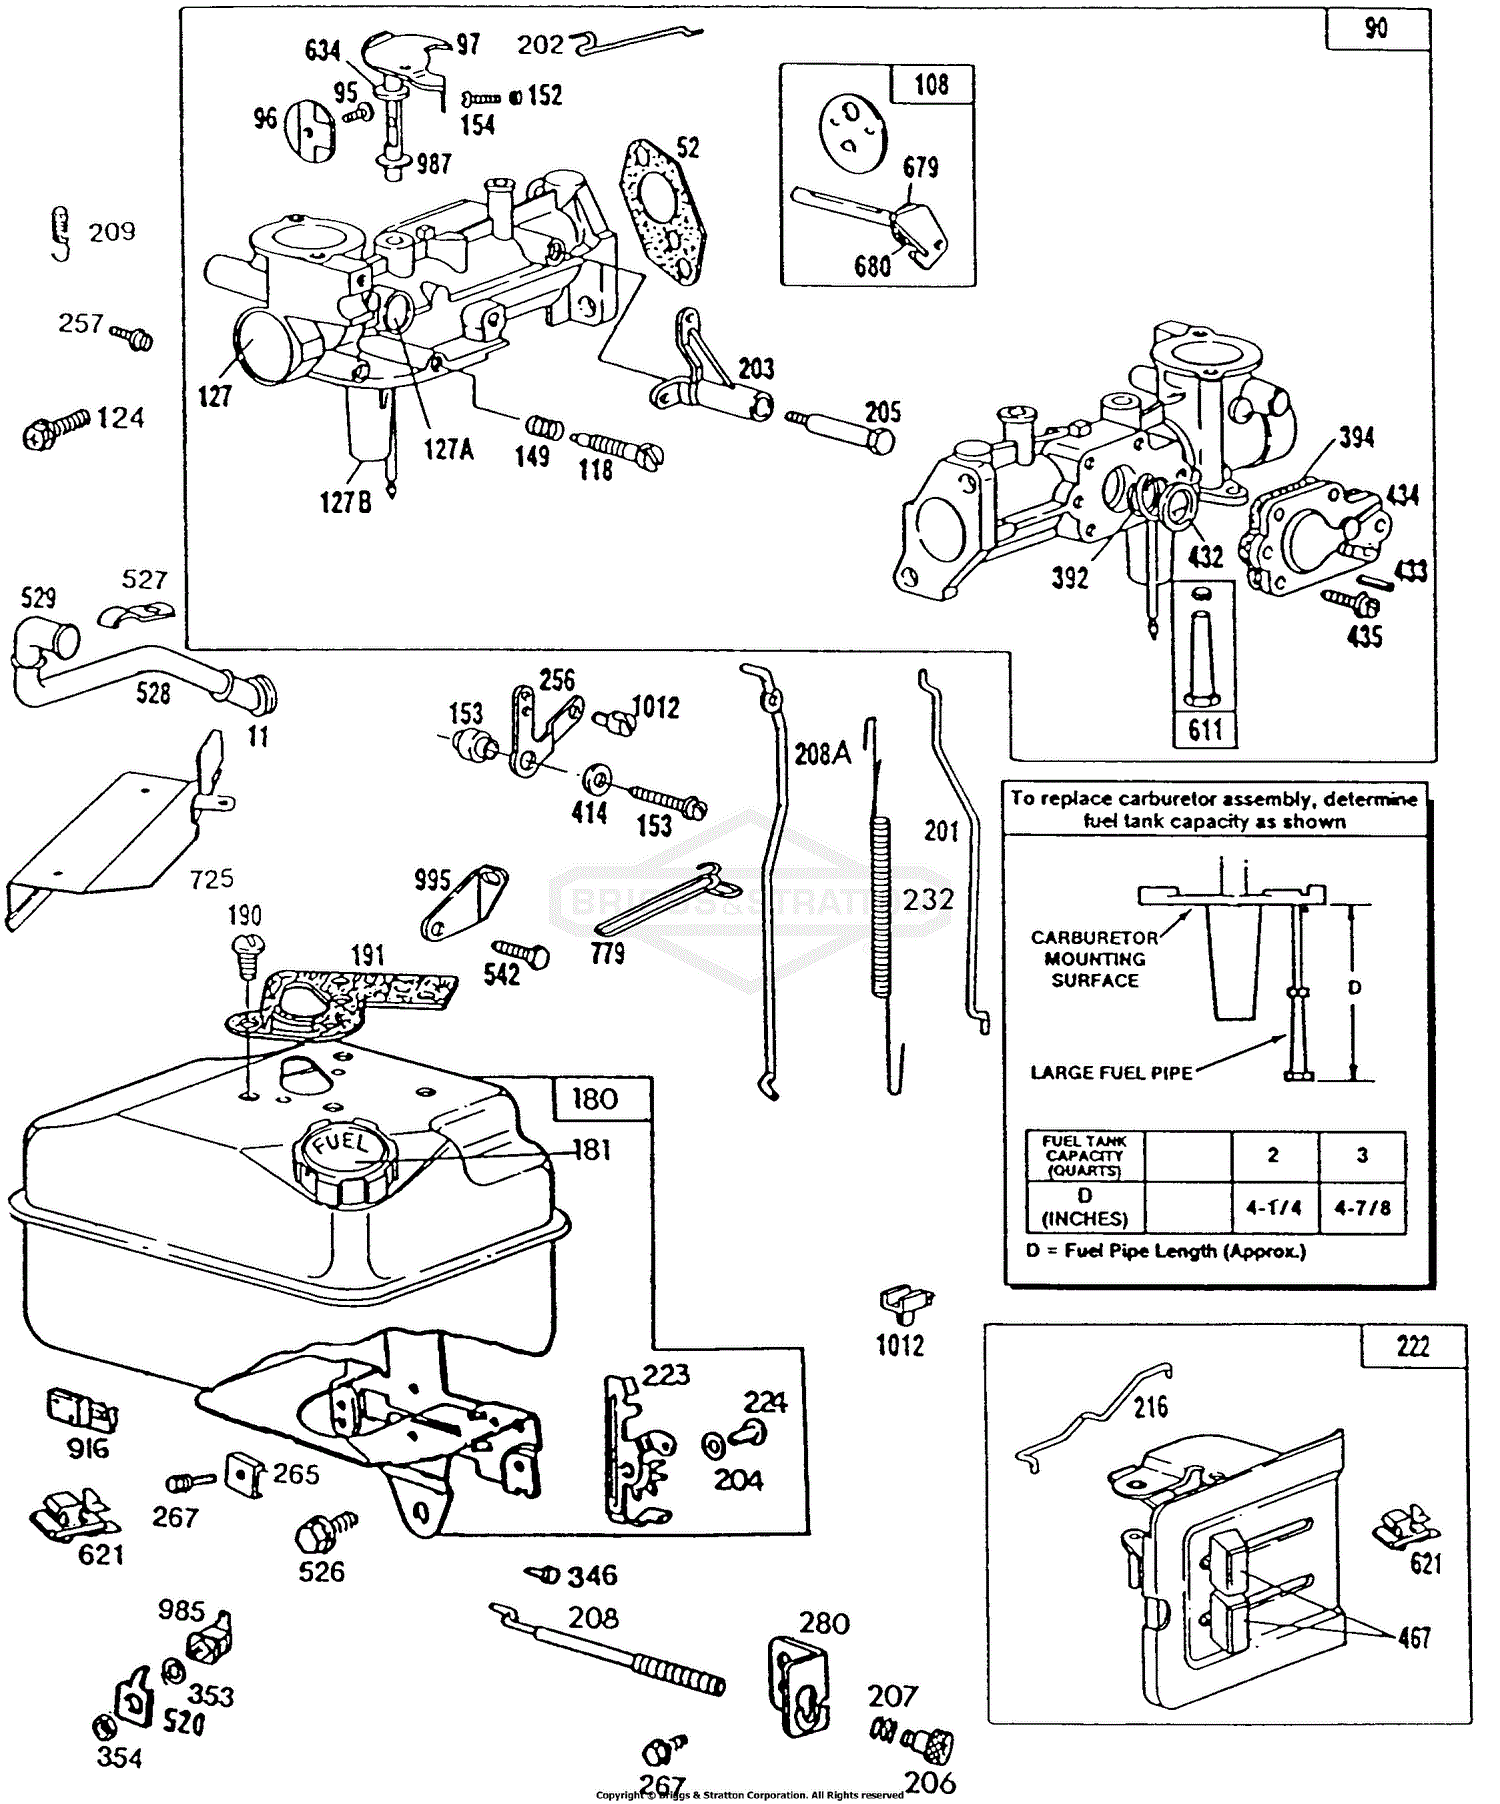 Briggs and Stratton 112212-0648-01 Parts Diagrams